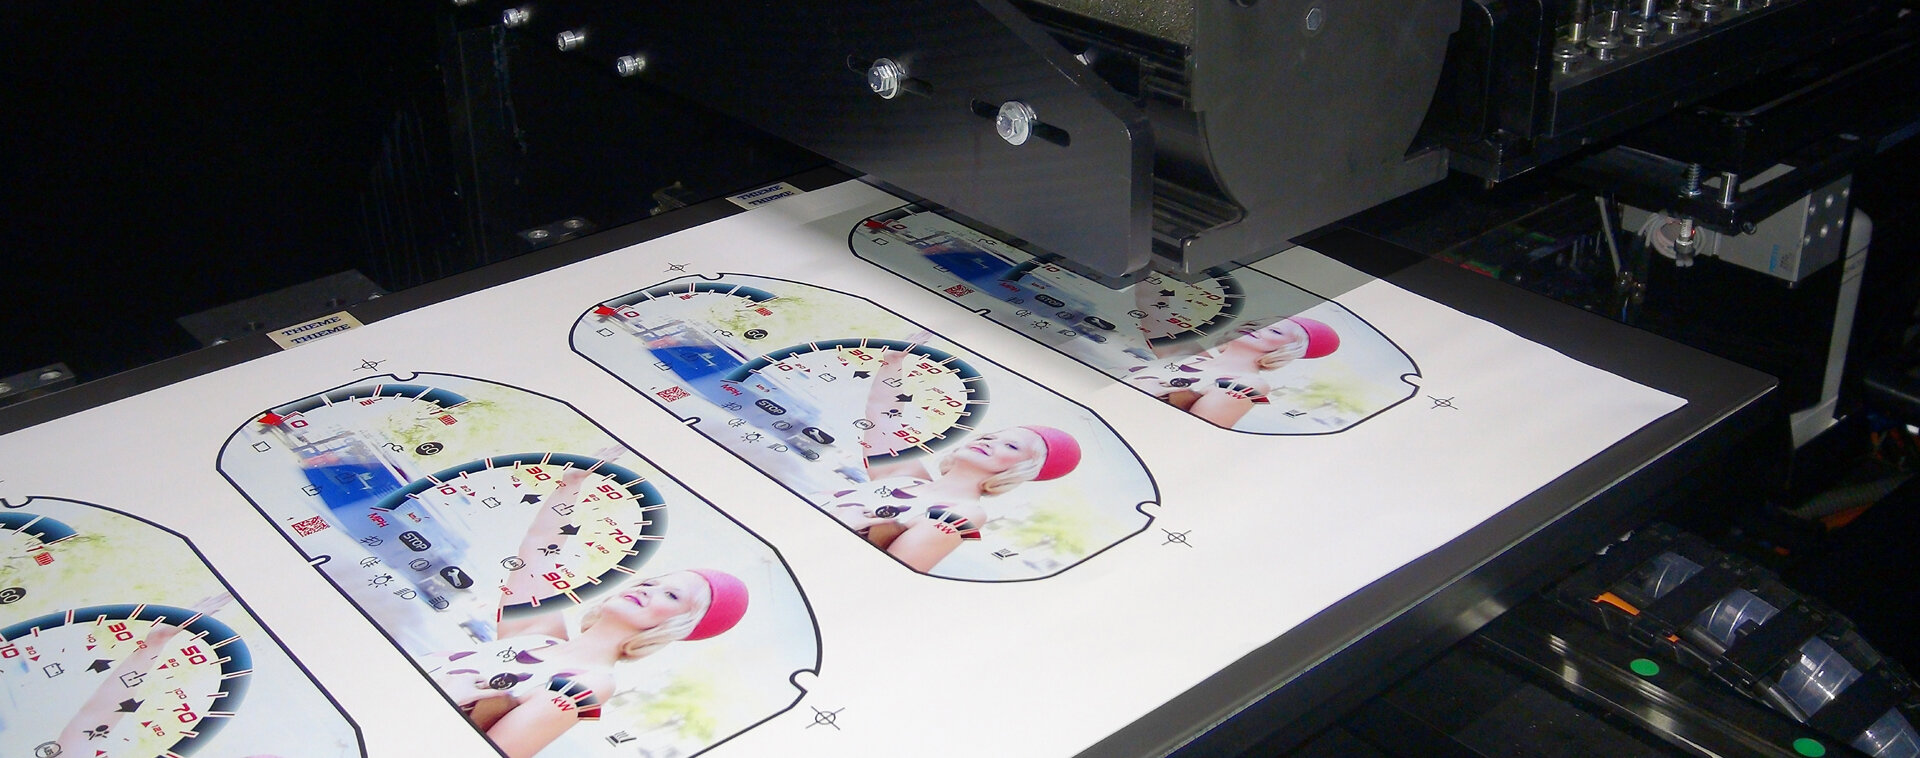 Digitaldruck Anwendung an einer Maschine